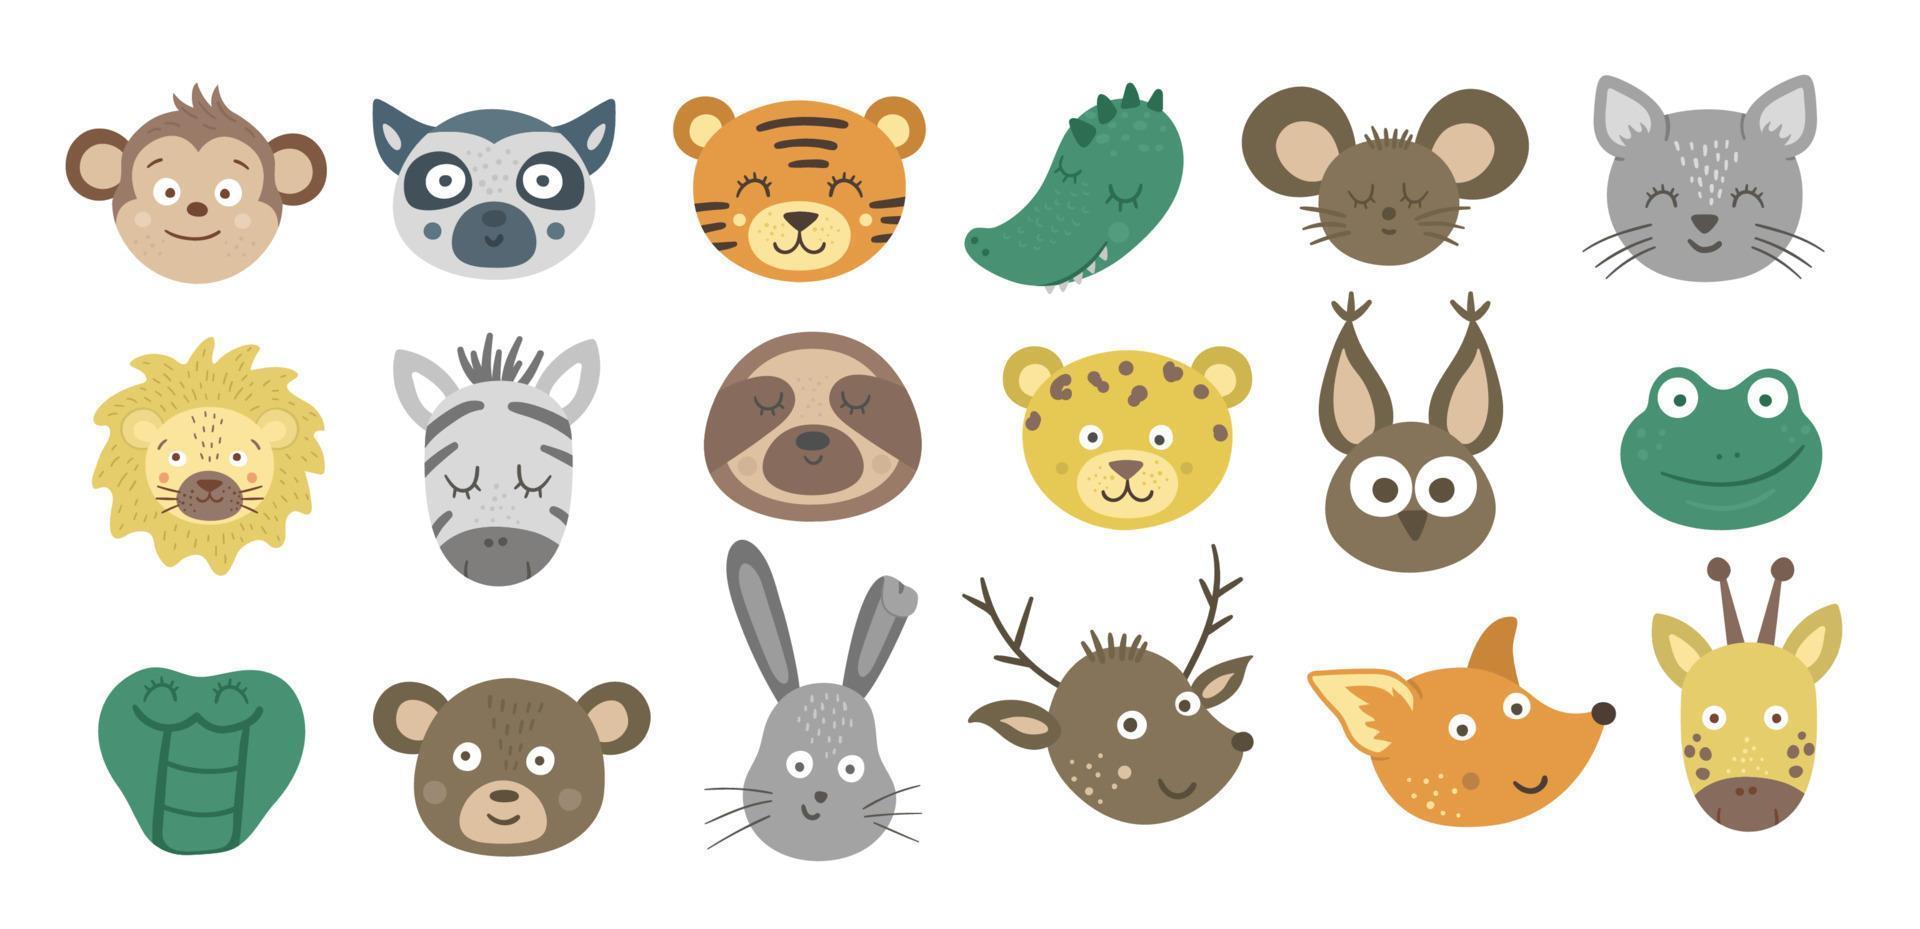 coleção de rostos de animais de vetor. conjunto de adesivos emoji de personagens tropicais e florestais. cabeças com expressões engraçadas isoladas no fundo branco. pacote de avatares fofos vetor